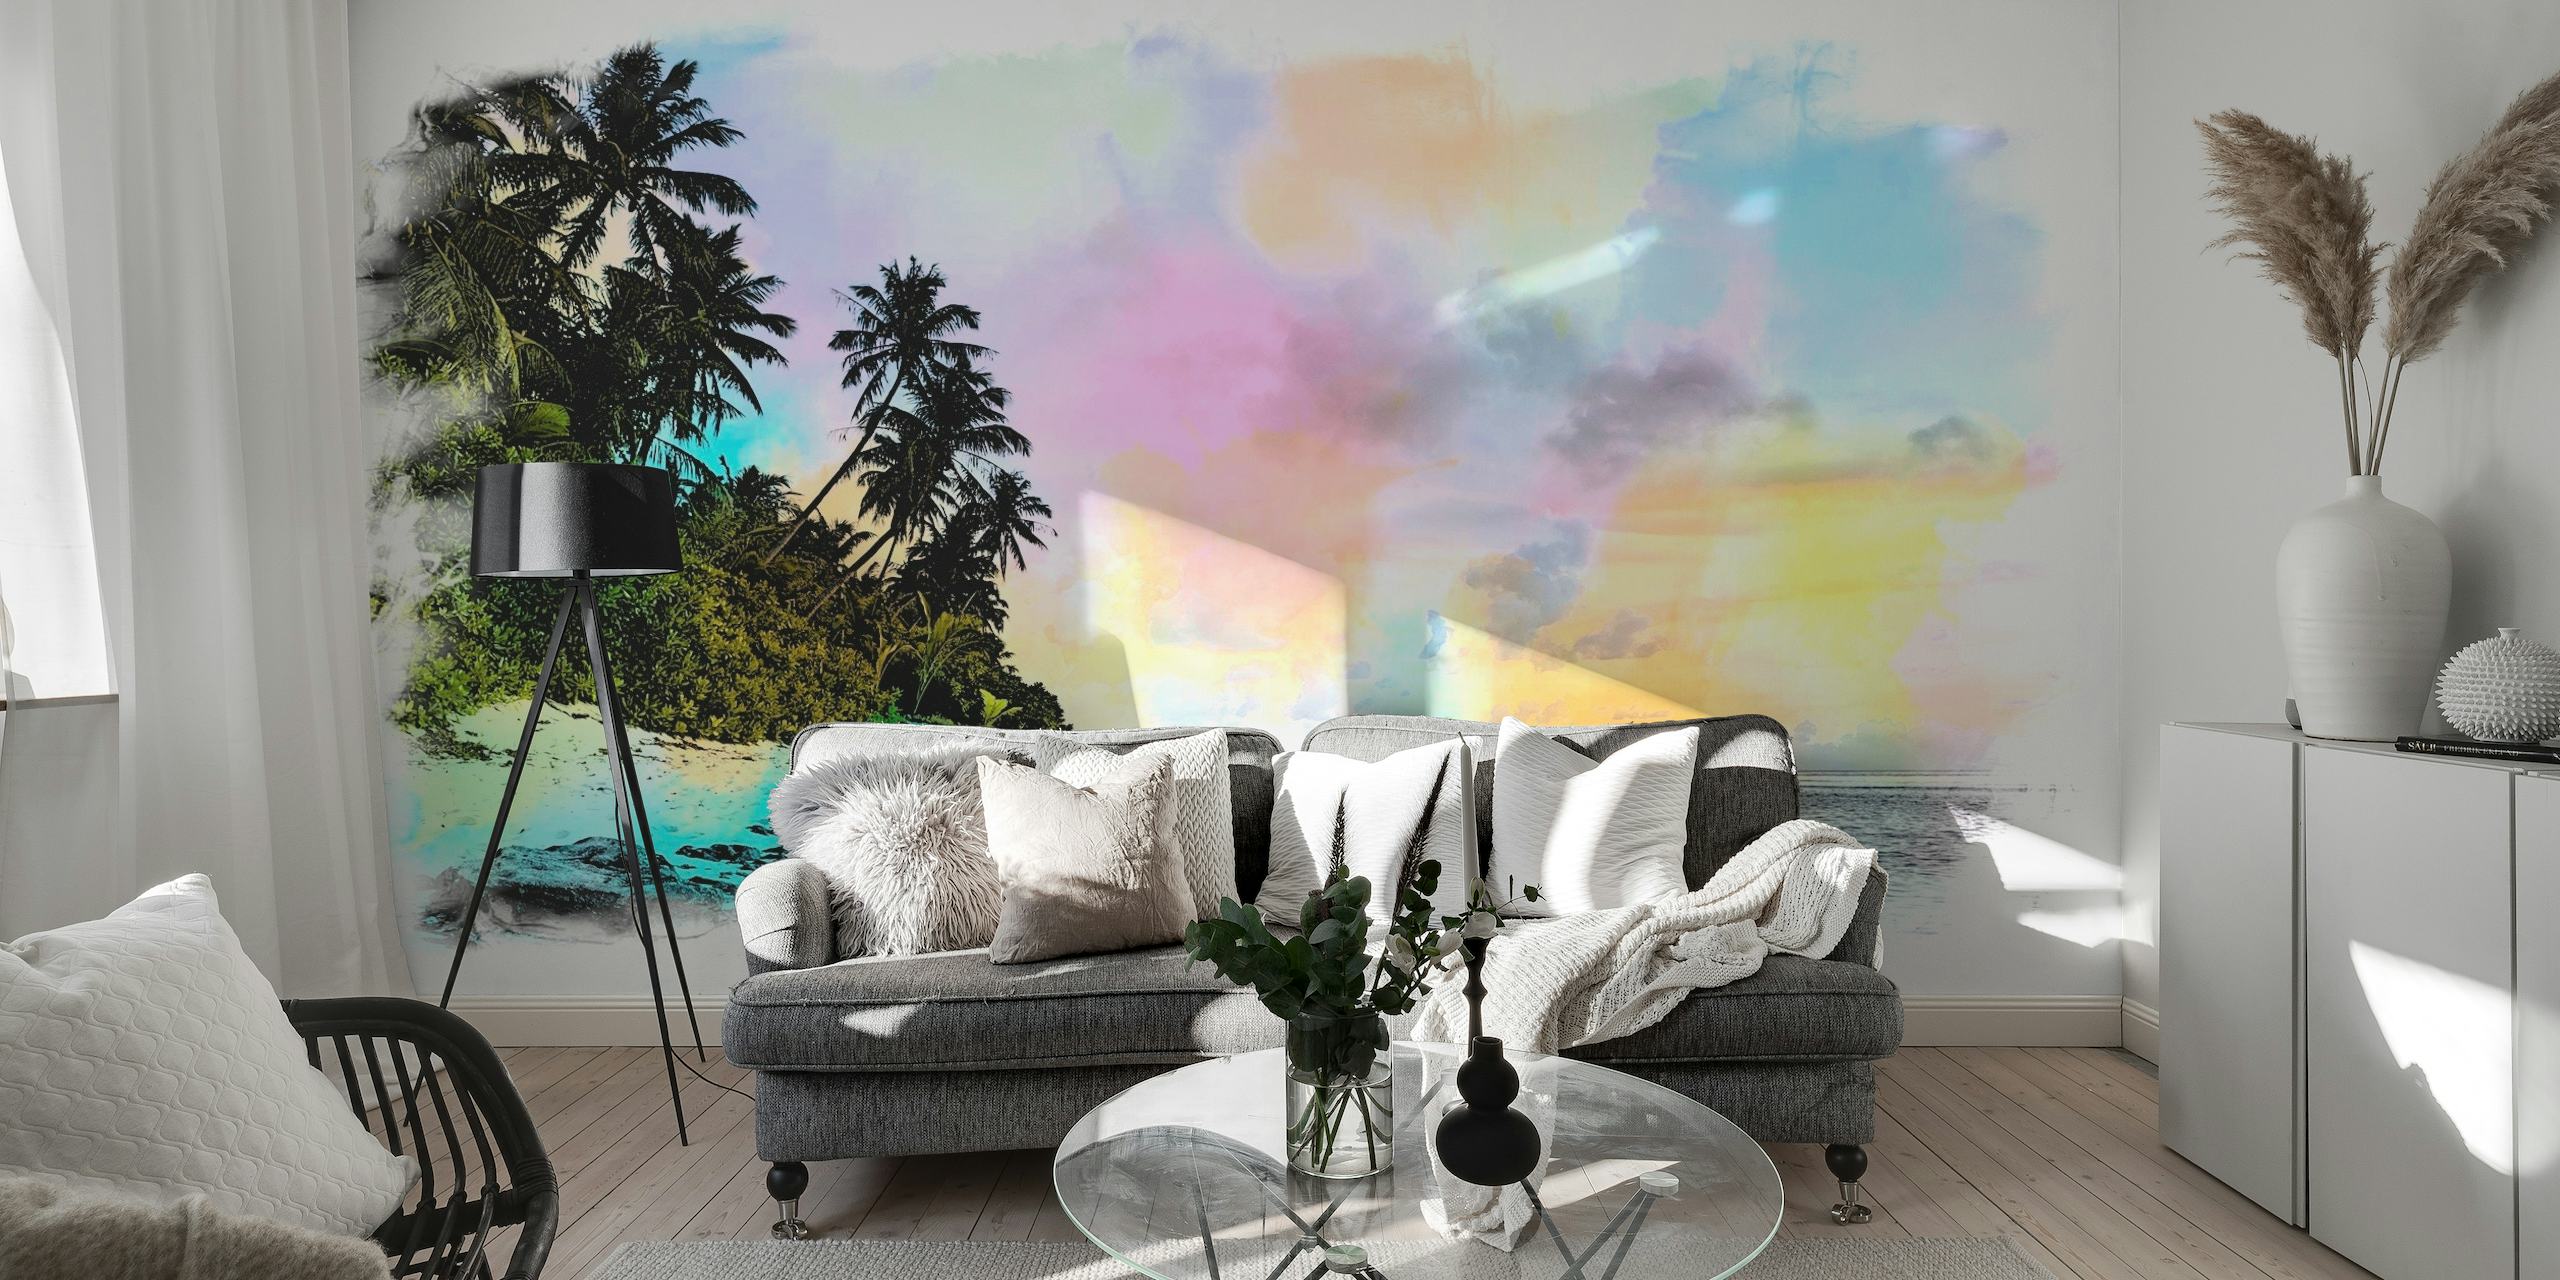 Representación artística en acuarela de una playa de verano con palmeras y cielos color pastel.